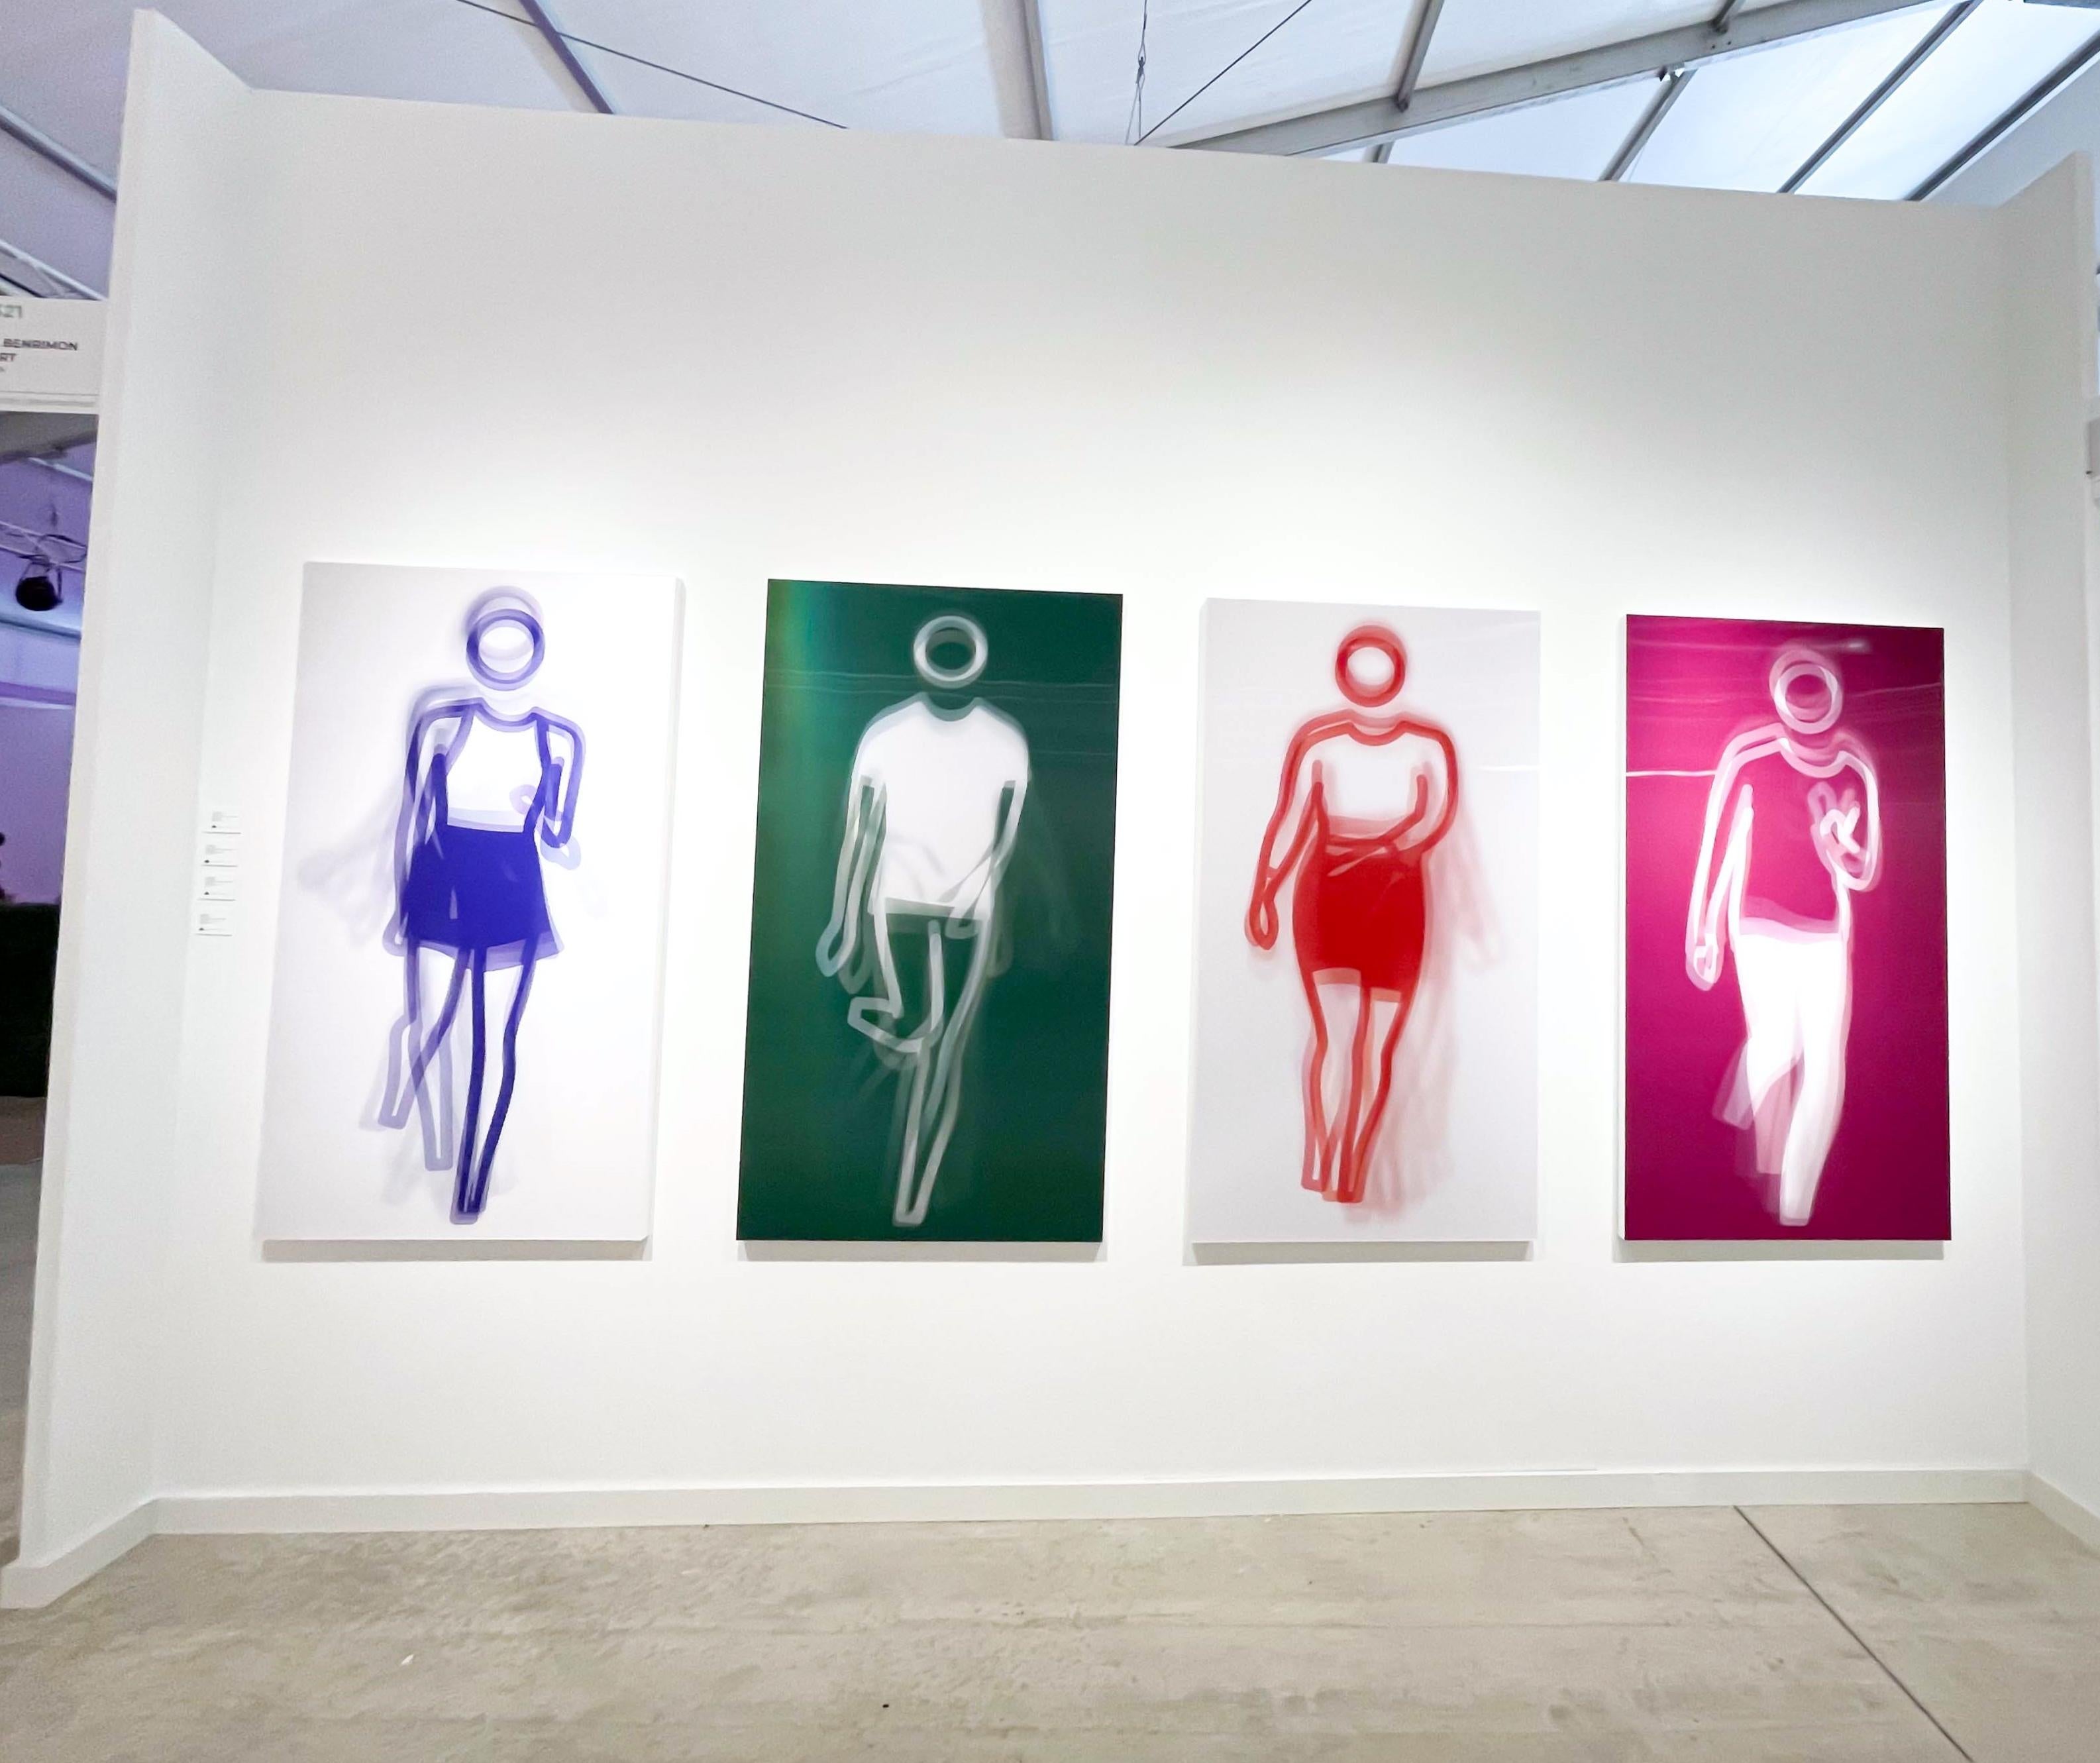 Moving Large Contemporary Acrylic Panel of Dancing Figure, Four Colors, Dance 2 (panneau acrylique contemporain de grande taille représentant une figure dansante) - Pop Art Print par Julian Opie